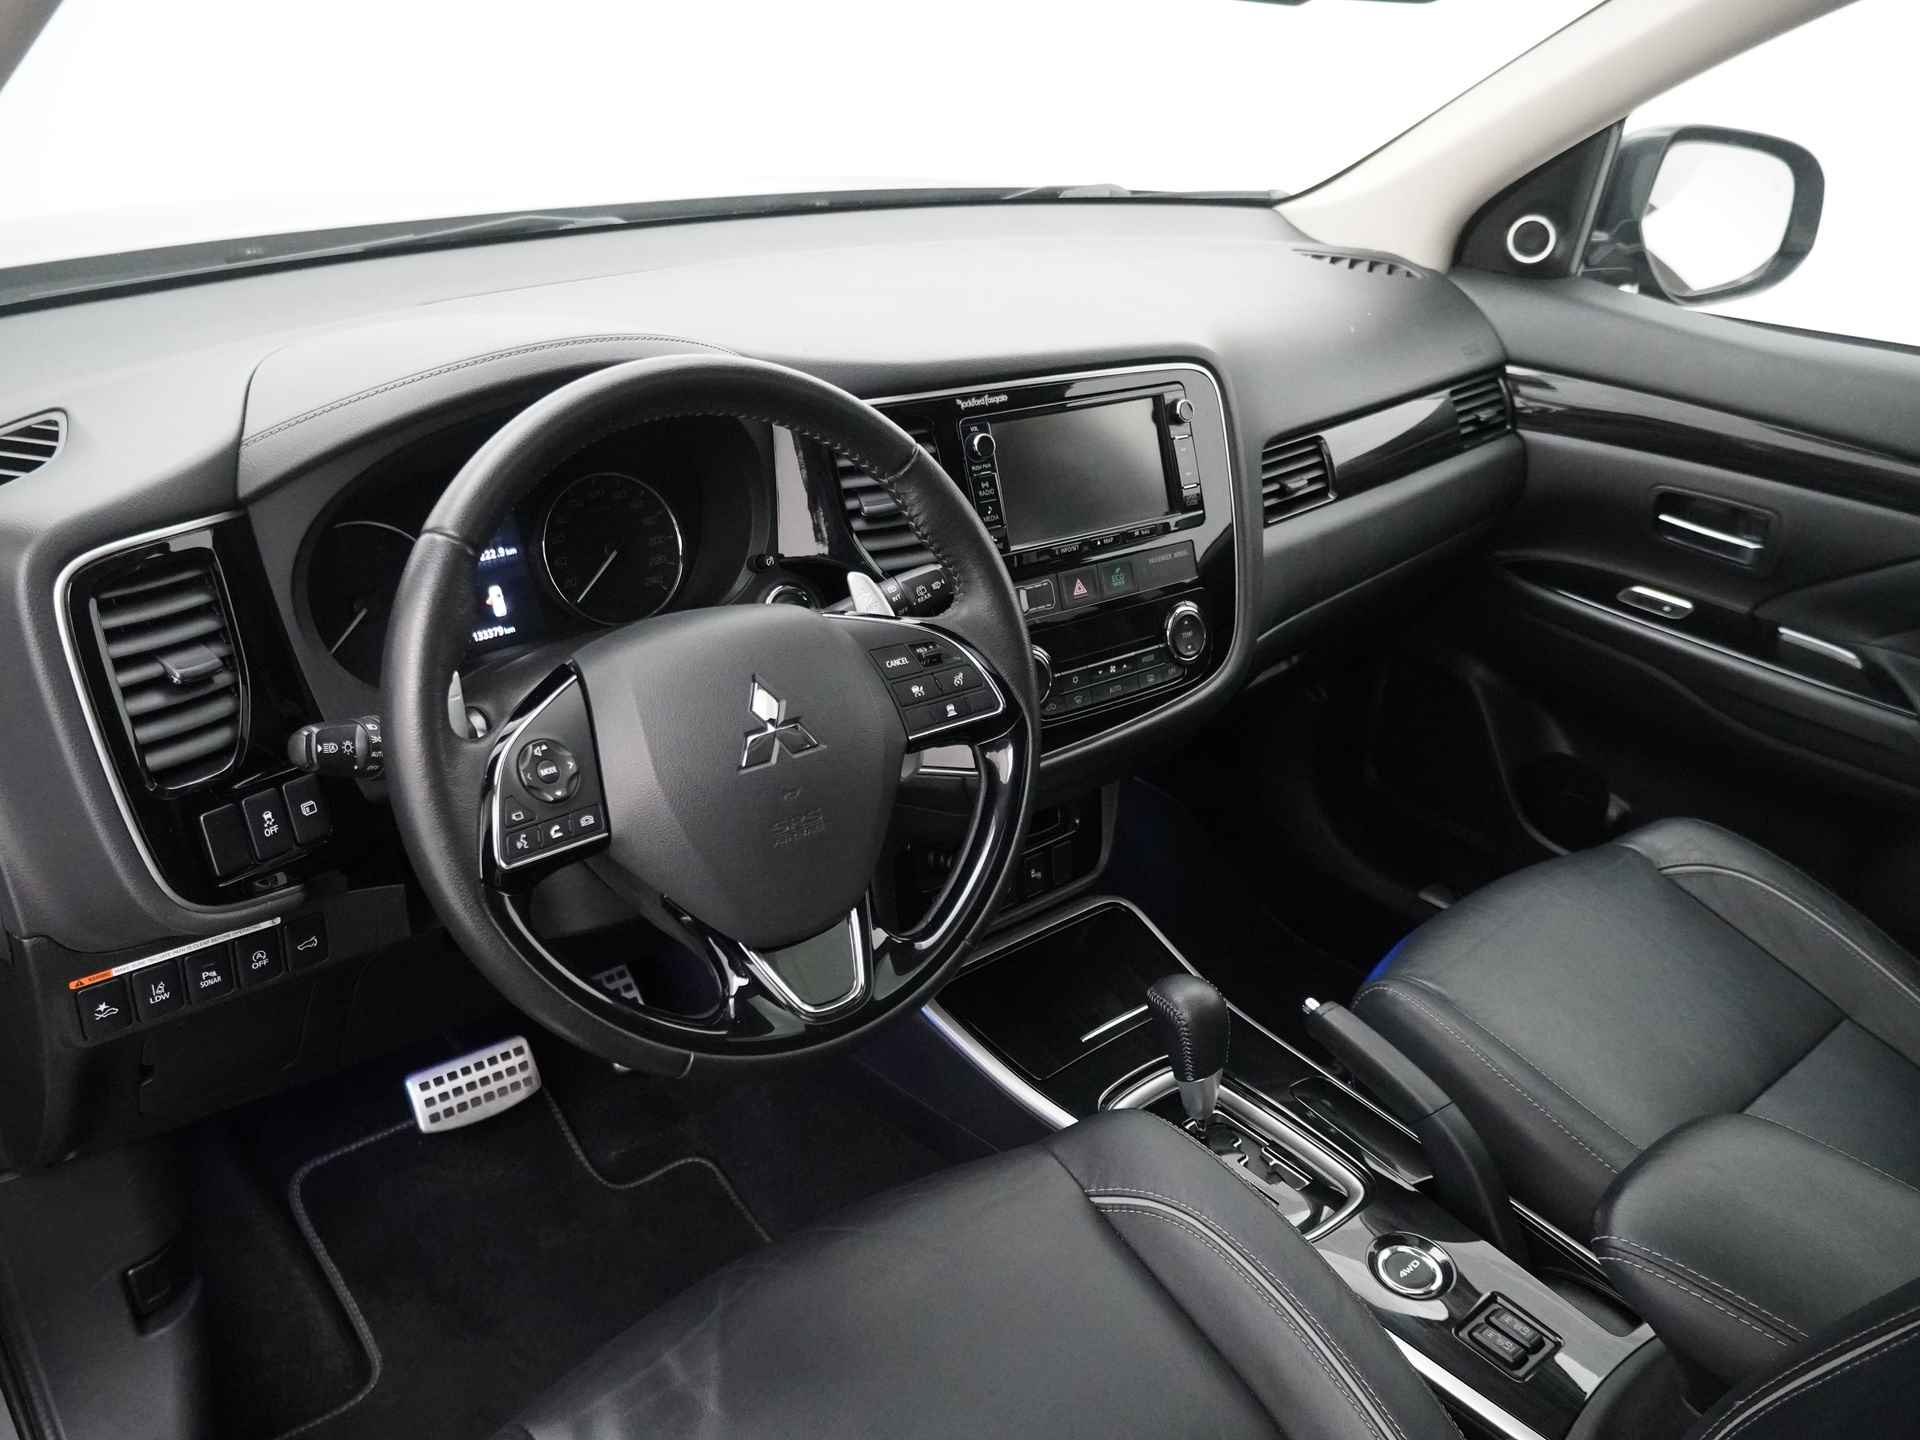 Mitsubishi Outlander 2.0 Instyle+ 4WD - Schuifkanteldak - Lederen bekleding - Voorraam verwarming - Apple CarPlay / Android Auto - Elektrische achterklep - 12 Maanden bovag garantie - 19/48